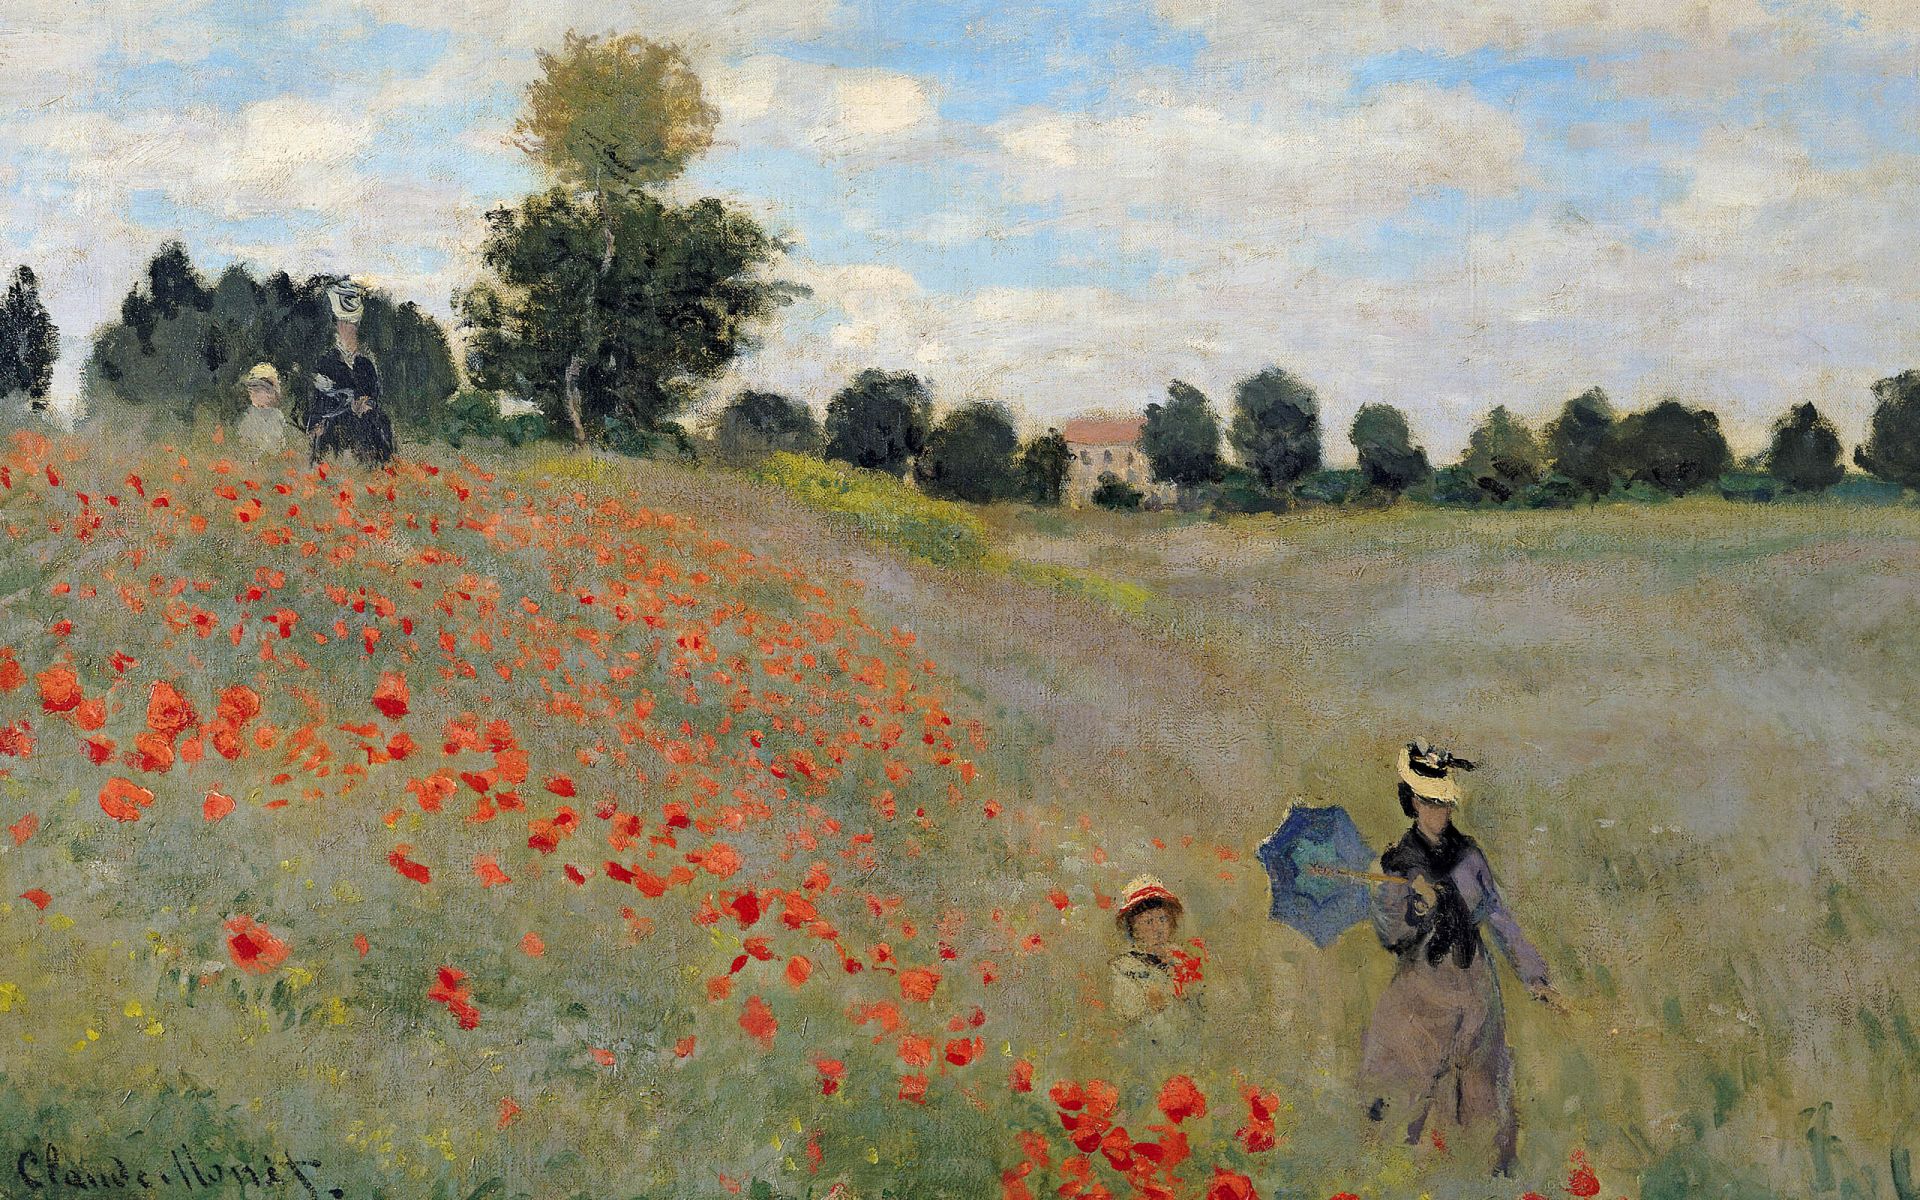 Wild-Poppies-By-Claude-Monet-Desktop-Wallpaper